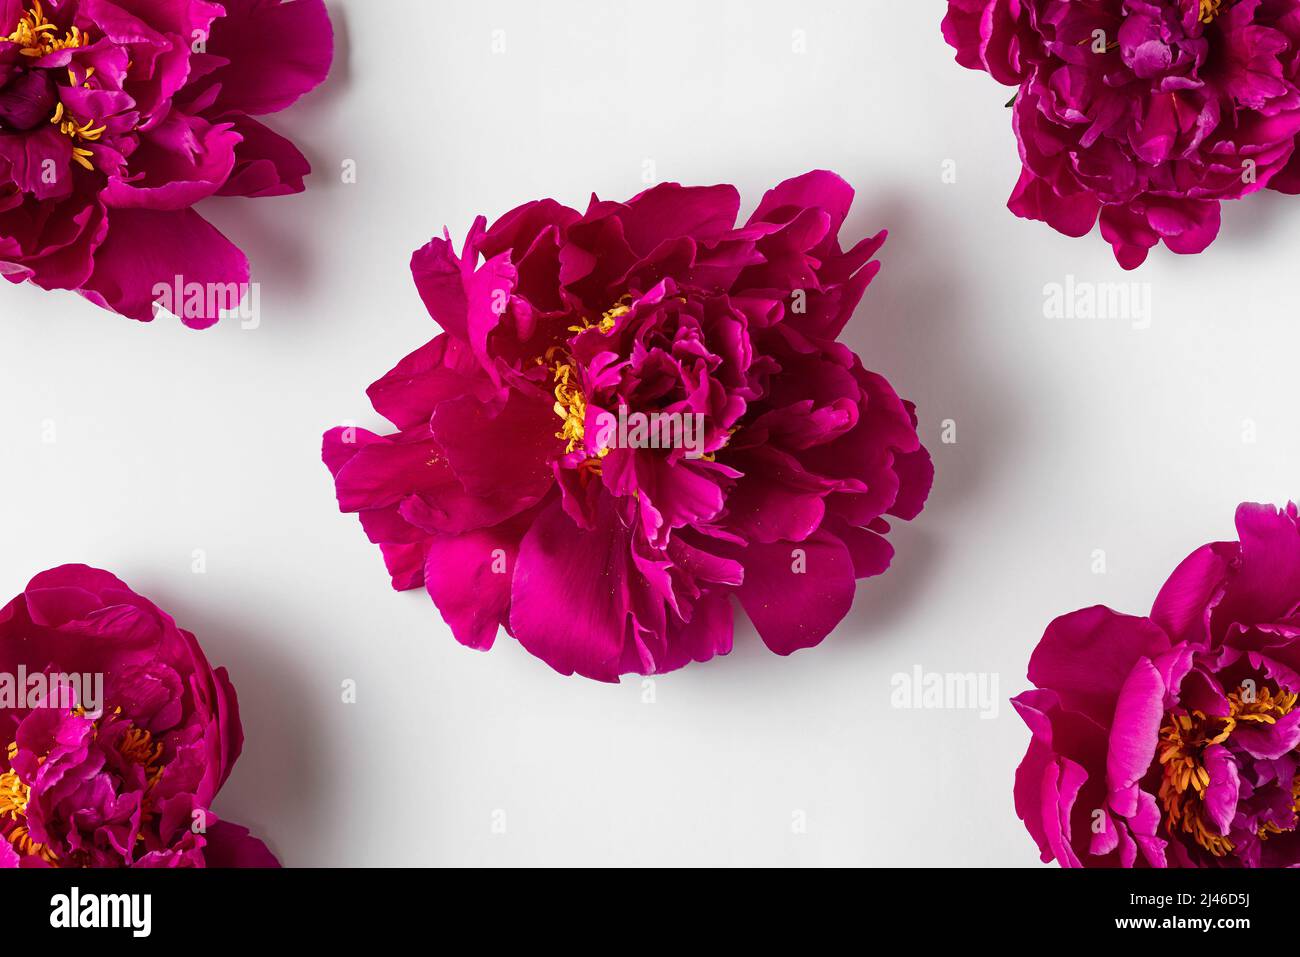 Blumenzusammensetzung. Pinkfarbenes Blütenmuster auf weißem Hintergrund. Flach liegend. Hochzeits- oder Urlaubskonzept. Draufsicht Stockfoto